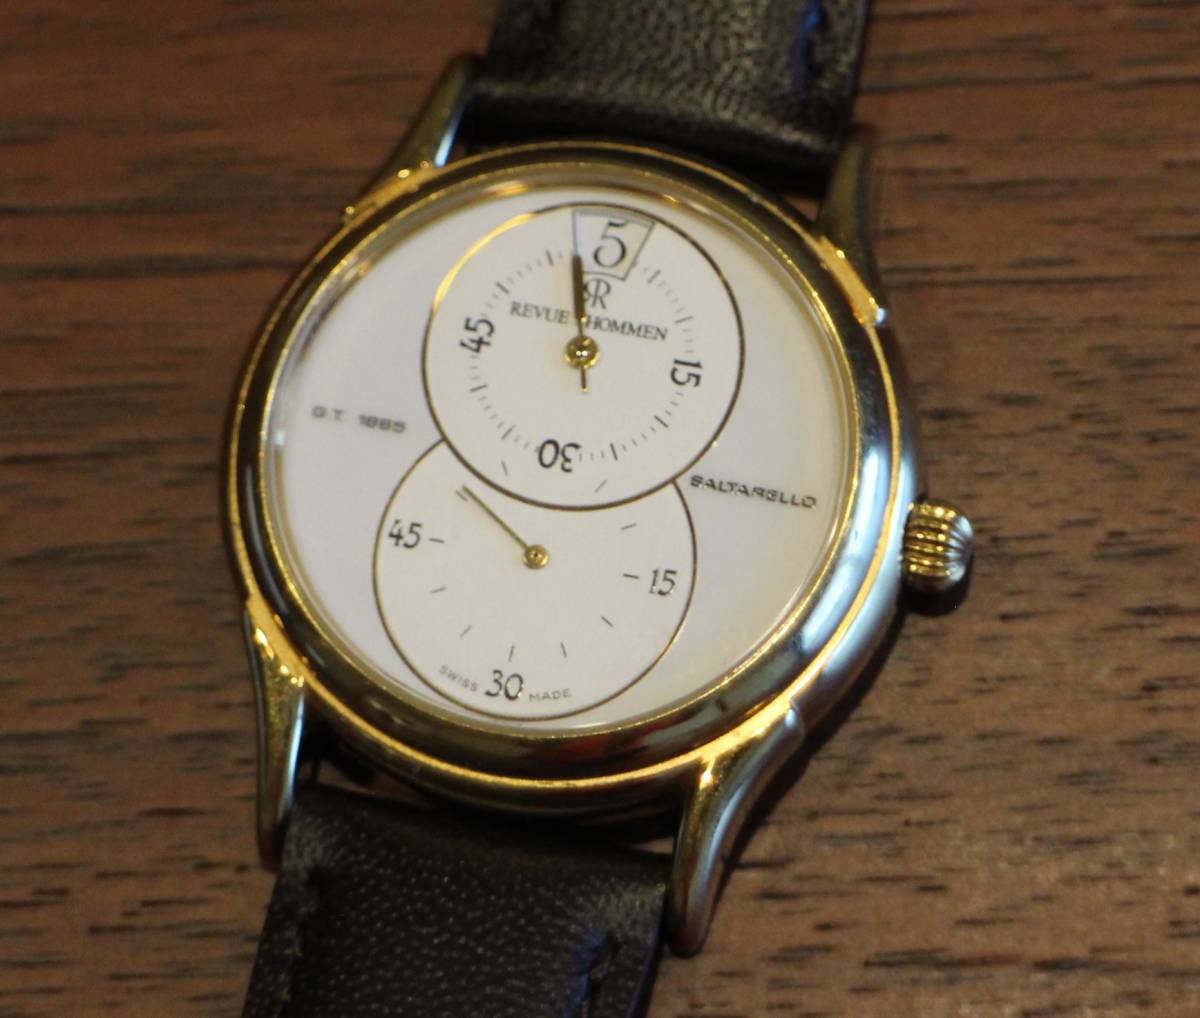 ホットセール スモセコ ゴールド 白文字 腕時計 GT1885 SALTARELLO 手